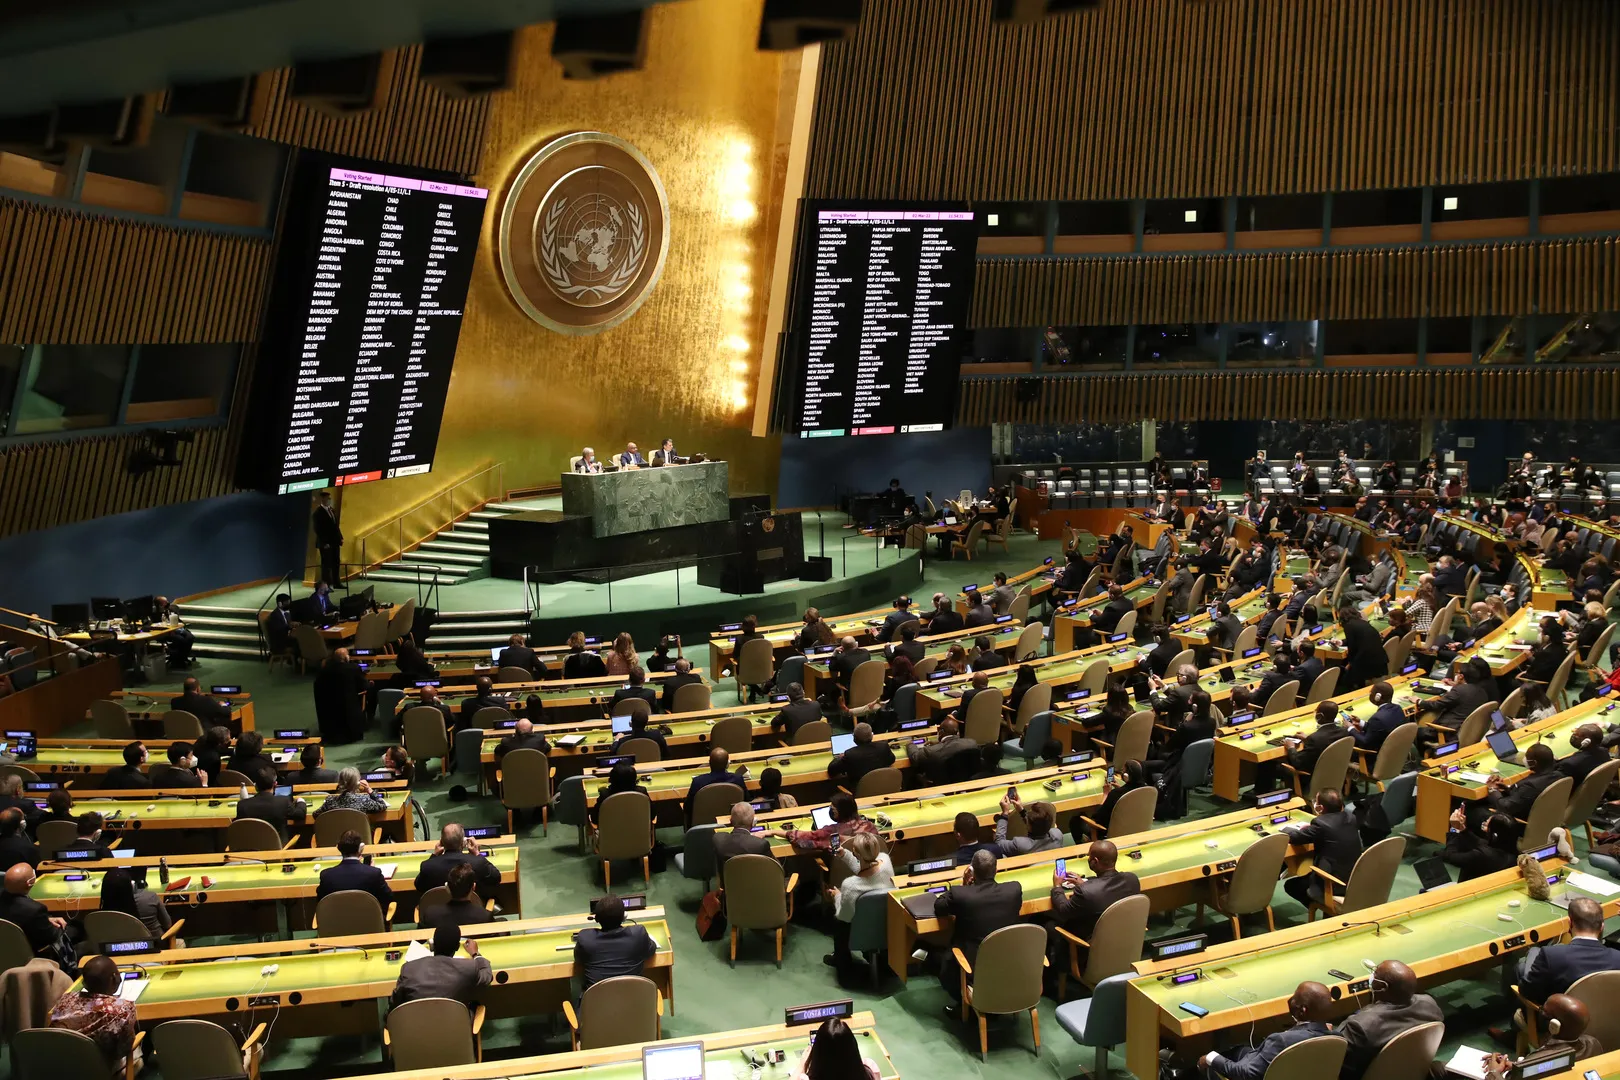 "استجابة سوريا": اجتماع "الجمعية العامة" فرصة للأمم المتحدة لإثبات جديتها اتجاه السوريين